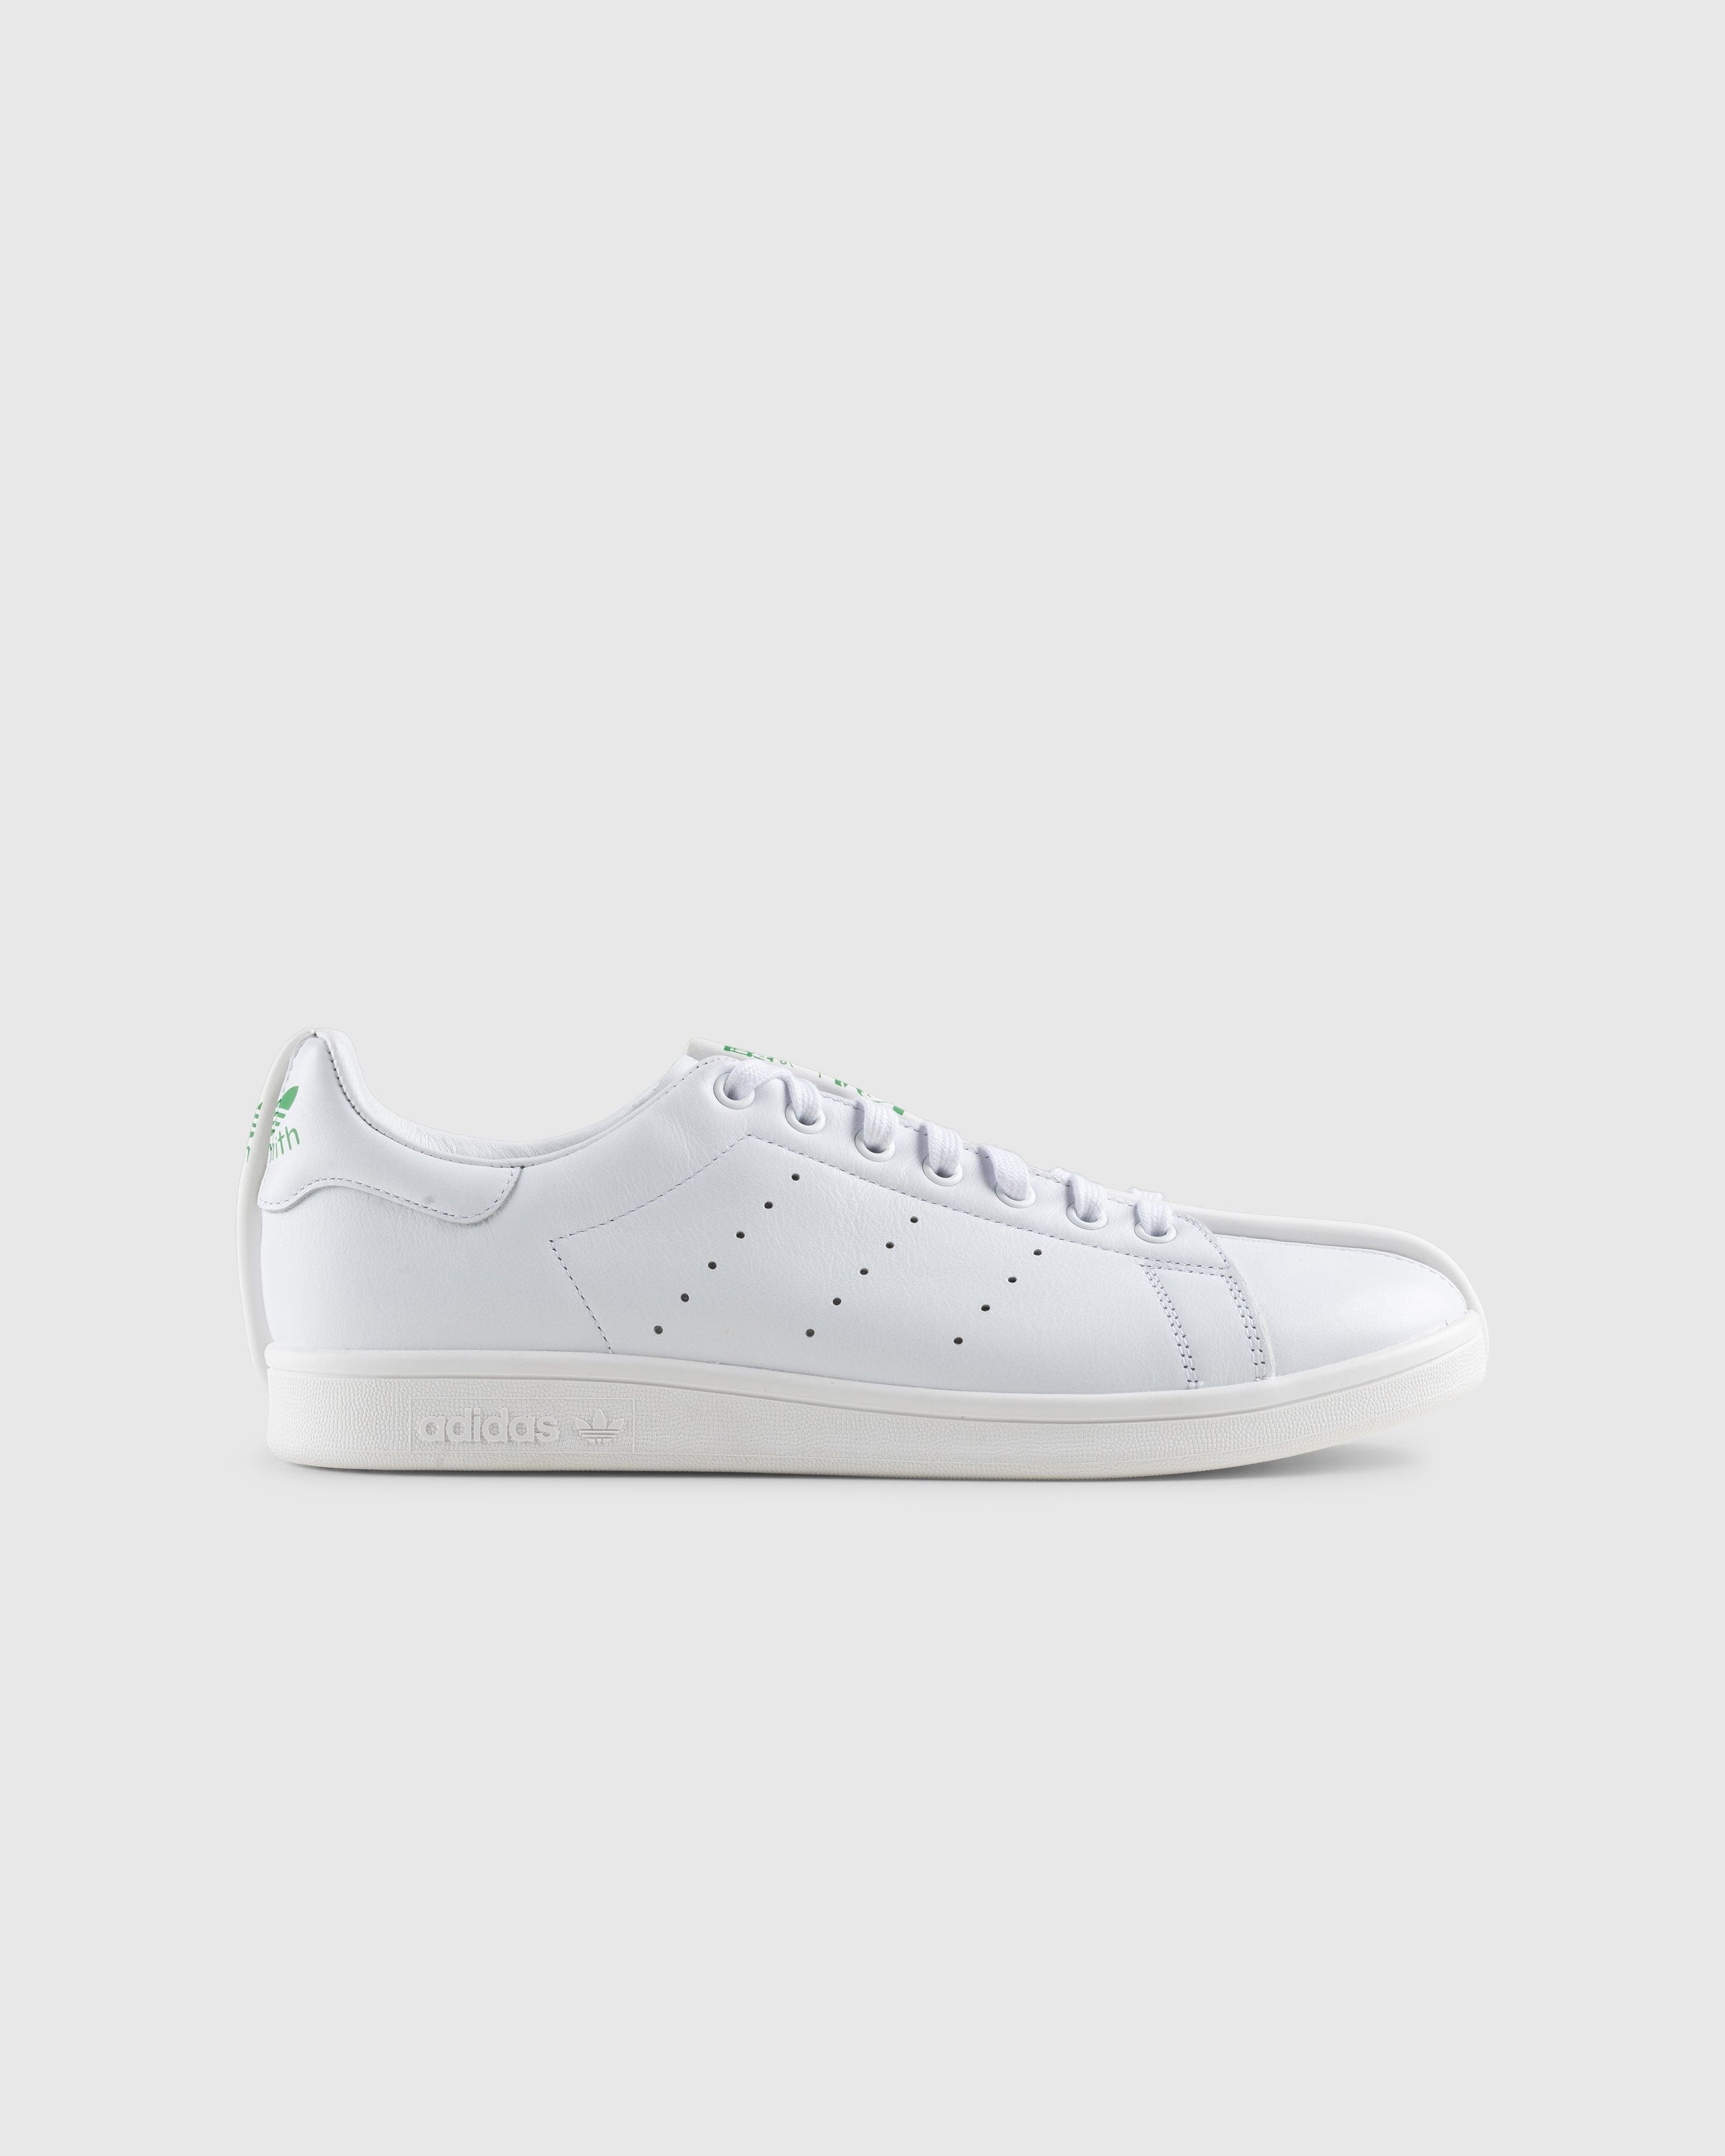 Craig Green x Adidas – CG Split Stan Smith White/Green - Sneakers - White - Image 1